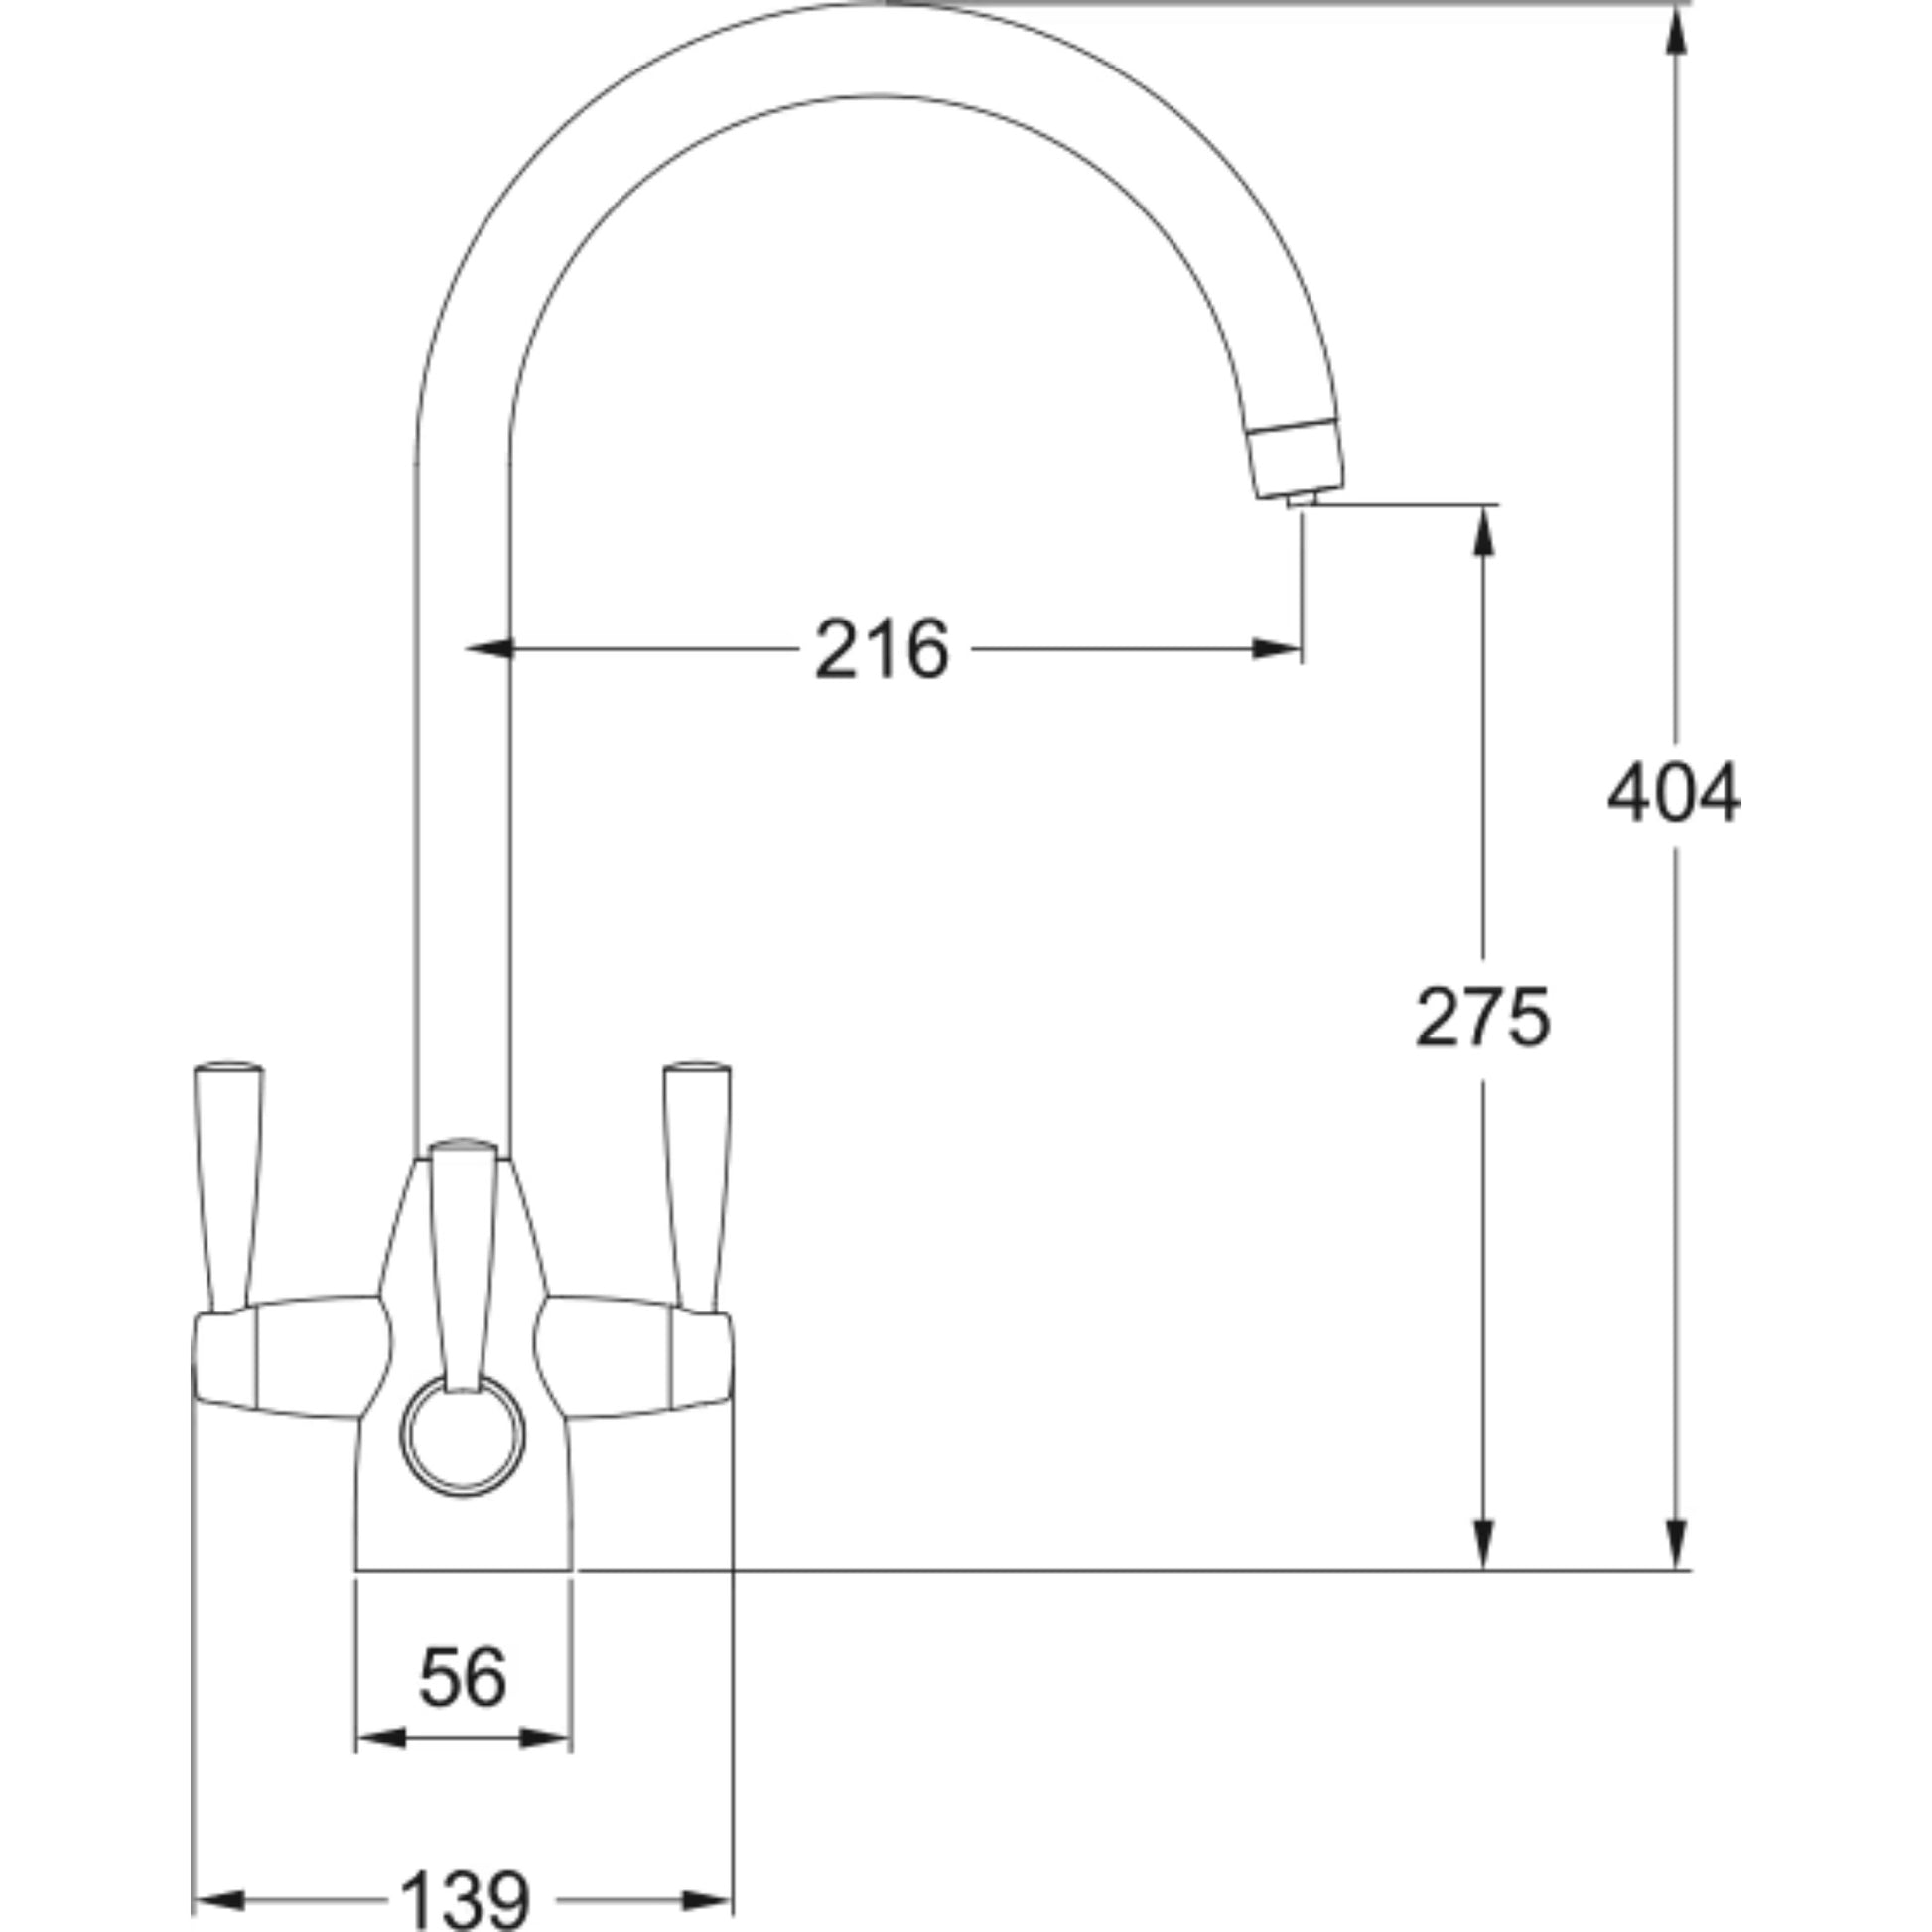 Franke Filter Flow Doric Kitchen Tap Dimensional Drawing